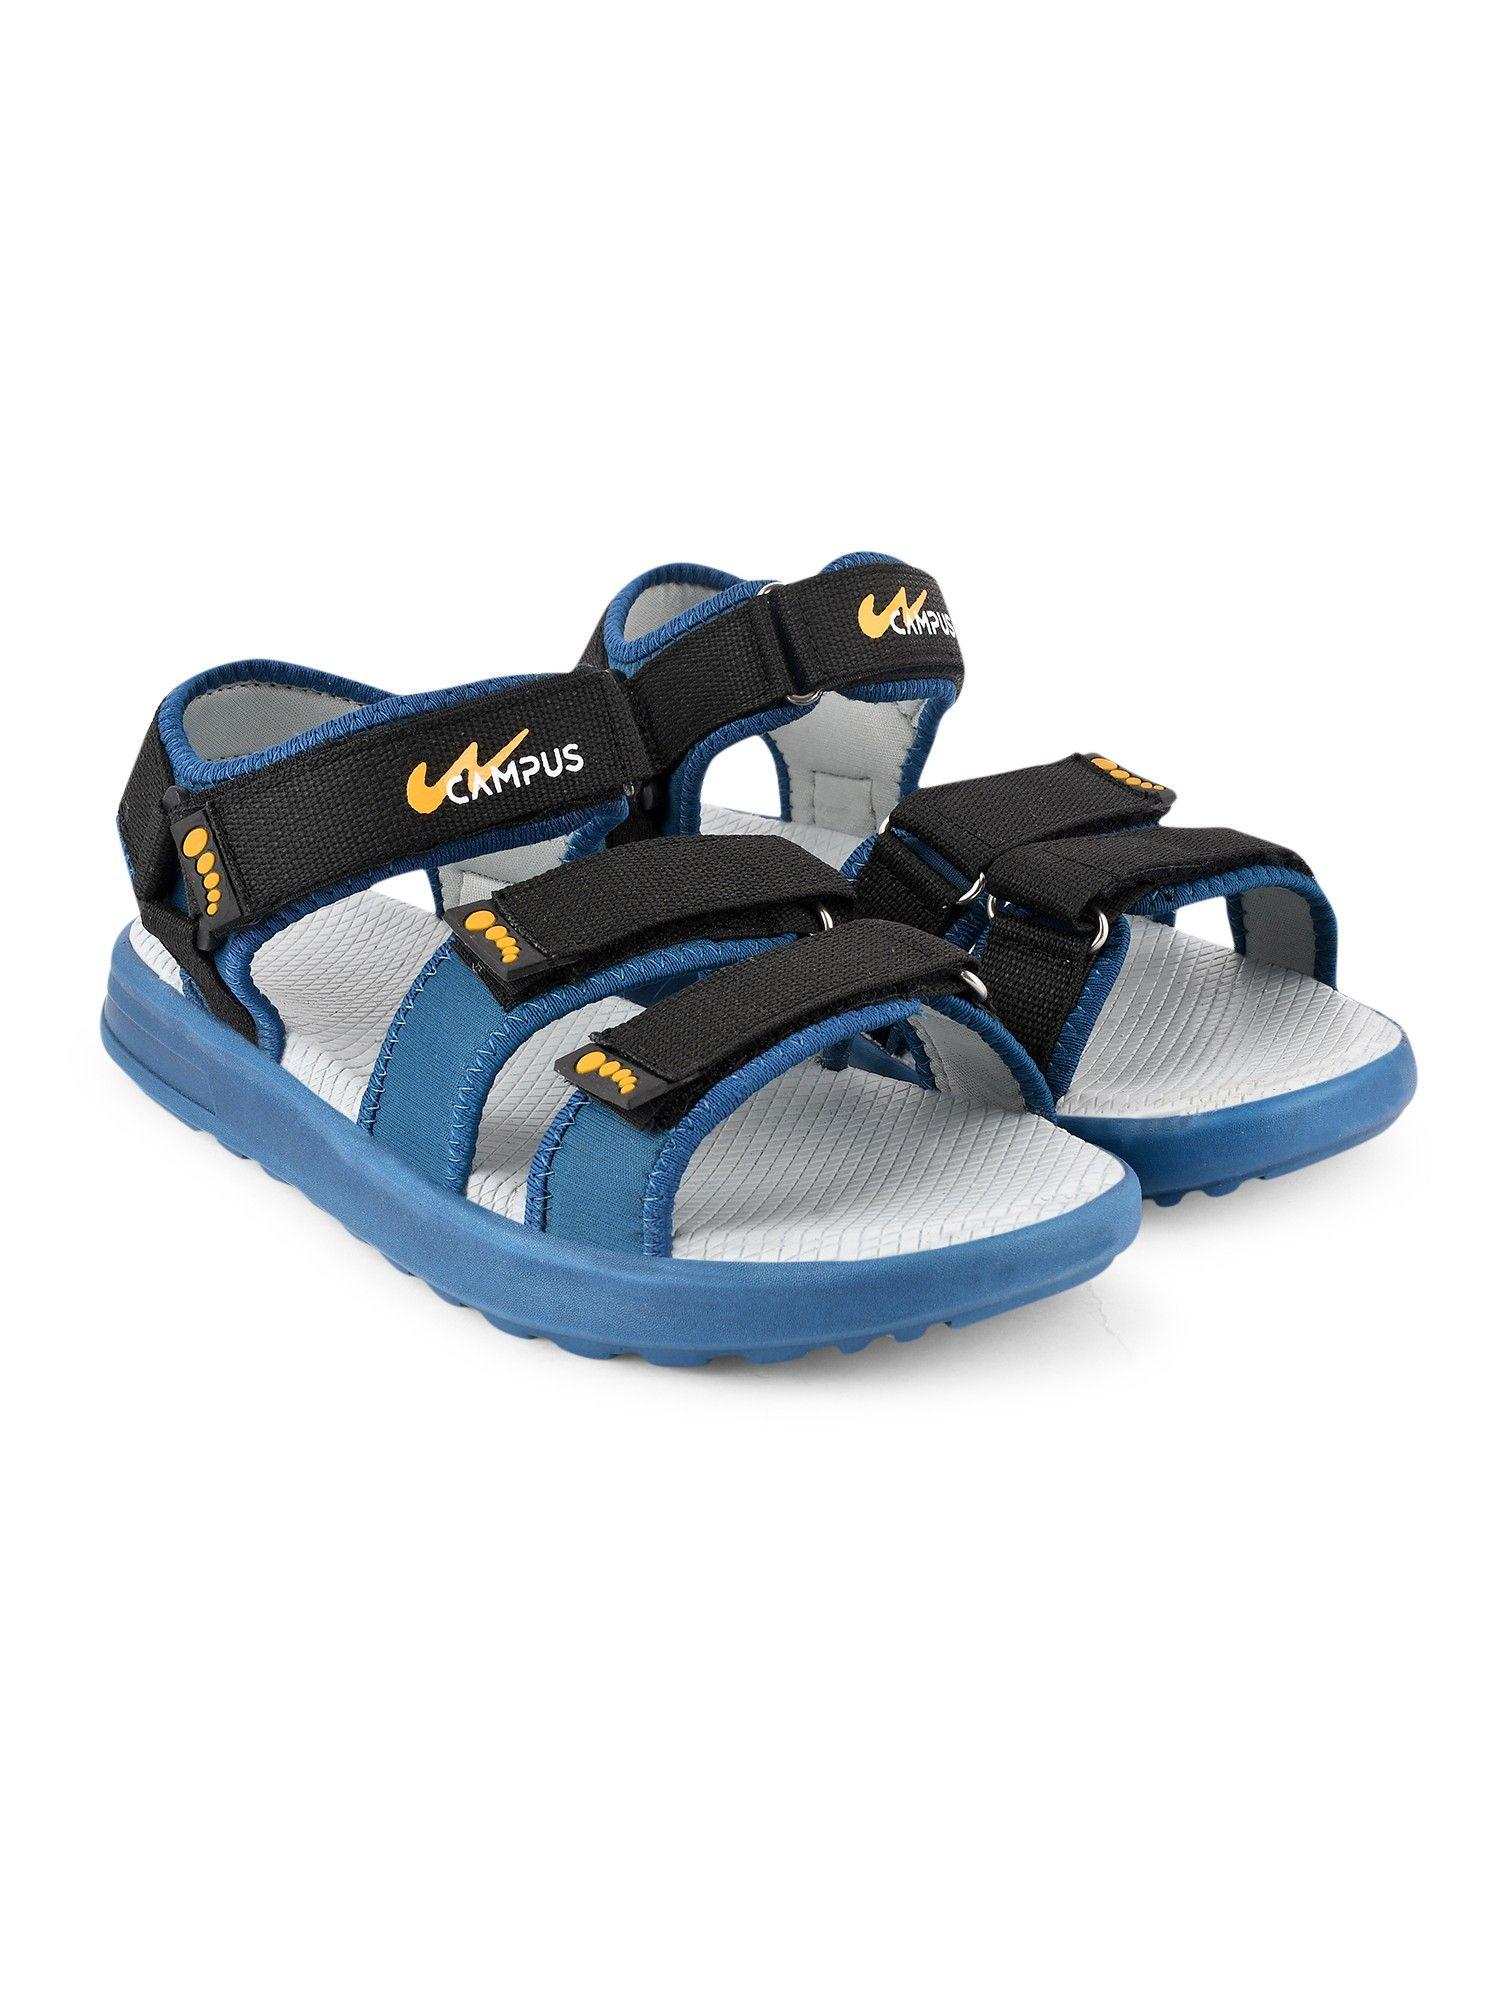 camp max blue men sandals